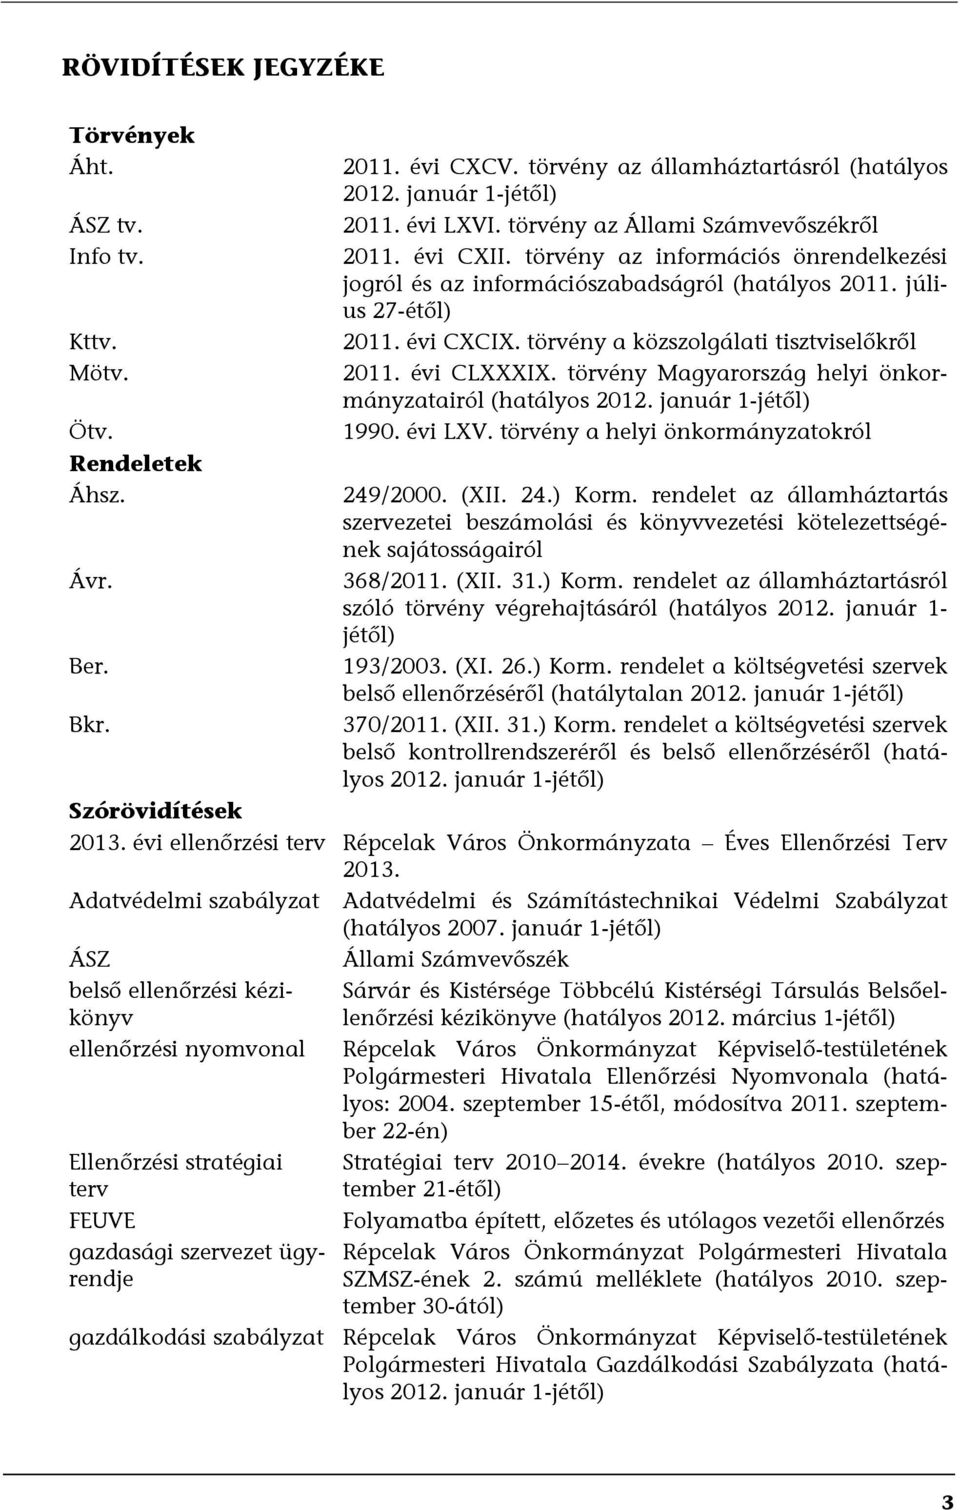 törvény a közszolgálati tisztviselőkről 2011. évi CLXXXIX. törvény Magyarország helyi önkormányzatairól (hatályos 2012. január 1-jétől) 1990. évi LXV. törvény a helyi önkormányzatokról 249/2000. (XII.